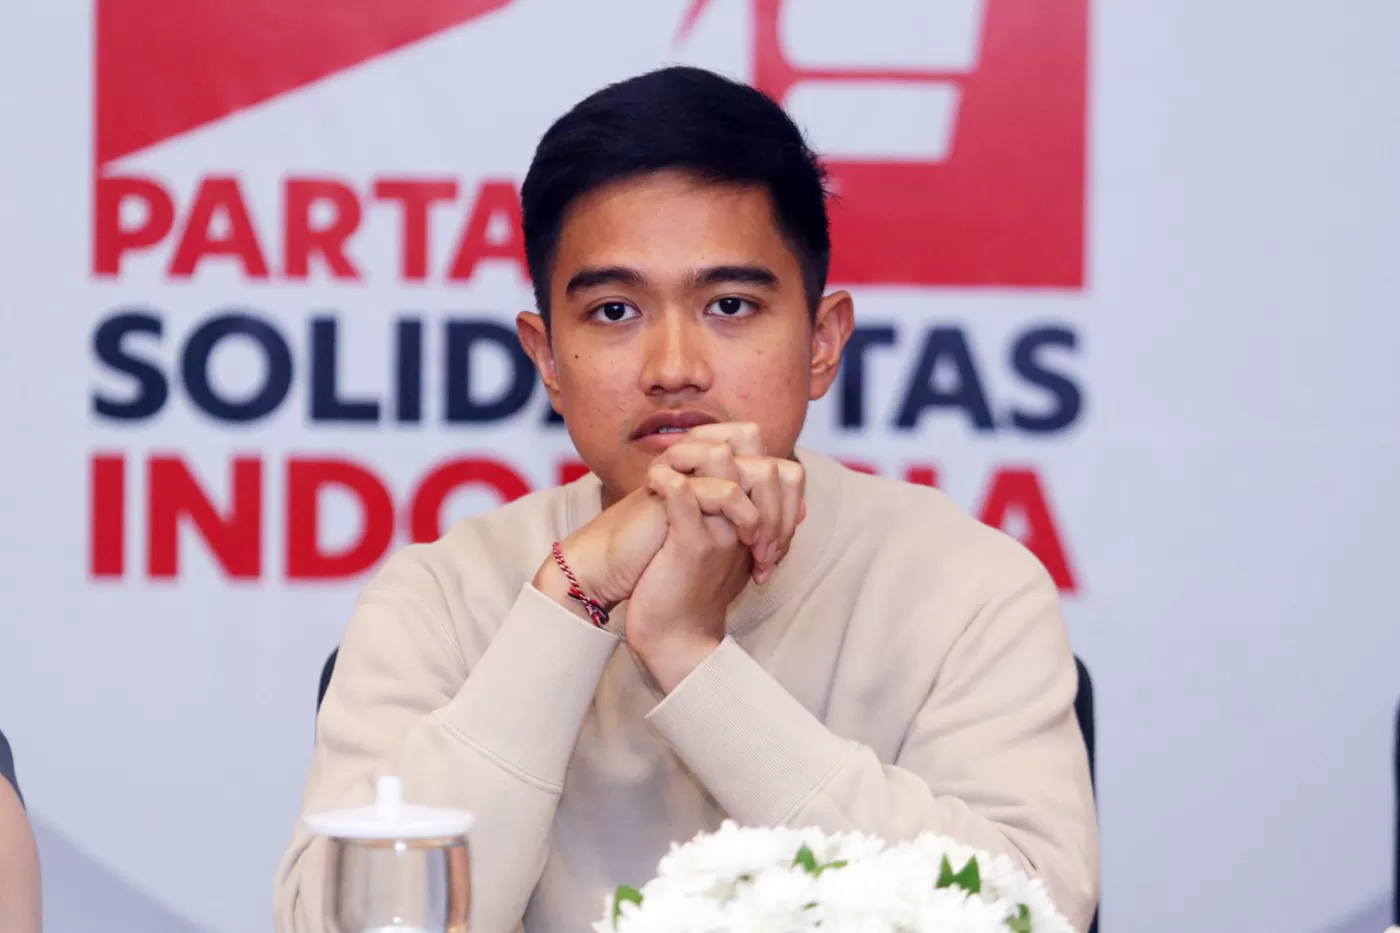 Ketua Umum Partai Solidaritas Indonesia (PSI), Kaesang Pangarep, memberikan tanggapan terkait hasil survei elektabilitas partainya yang belum menunjukkan performa (Sumber foto: Jawapos)